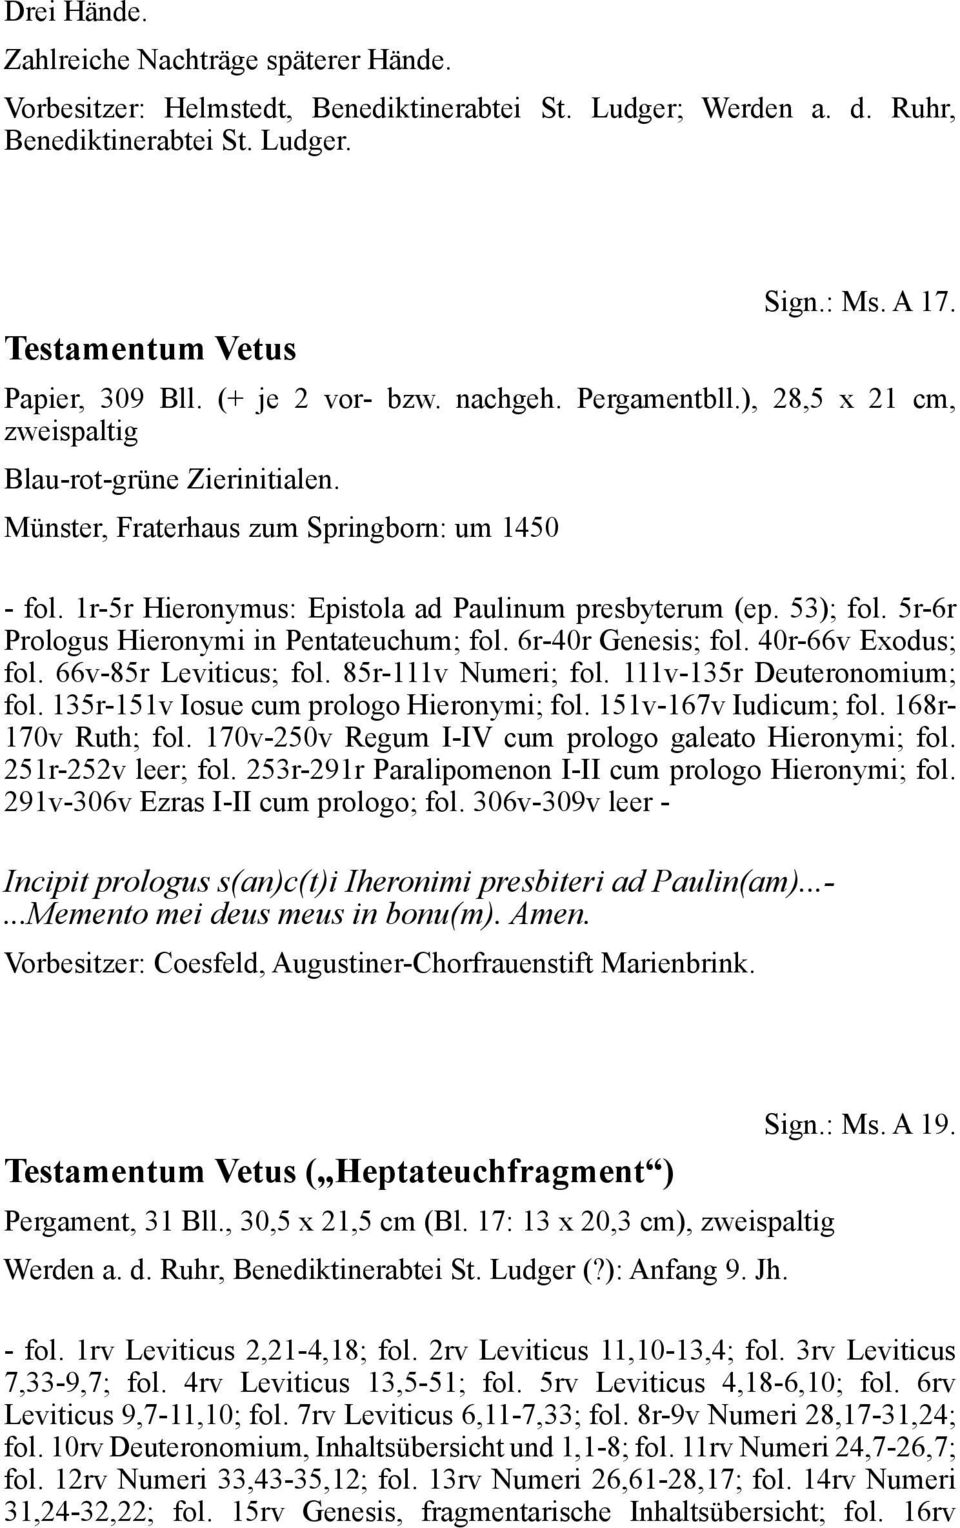 1r-5r Hieronymus: Epistola ad Paulinum presbyterum (ep. 53); fol. 5r-6r Prologus Hieronymi in Pentateuchum; fol. 6r-40r Genesis; fol. 40r-66v Exodus; fol. 66v-85r Leviticus; fol. 85r-111v Numeri; fol.